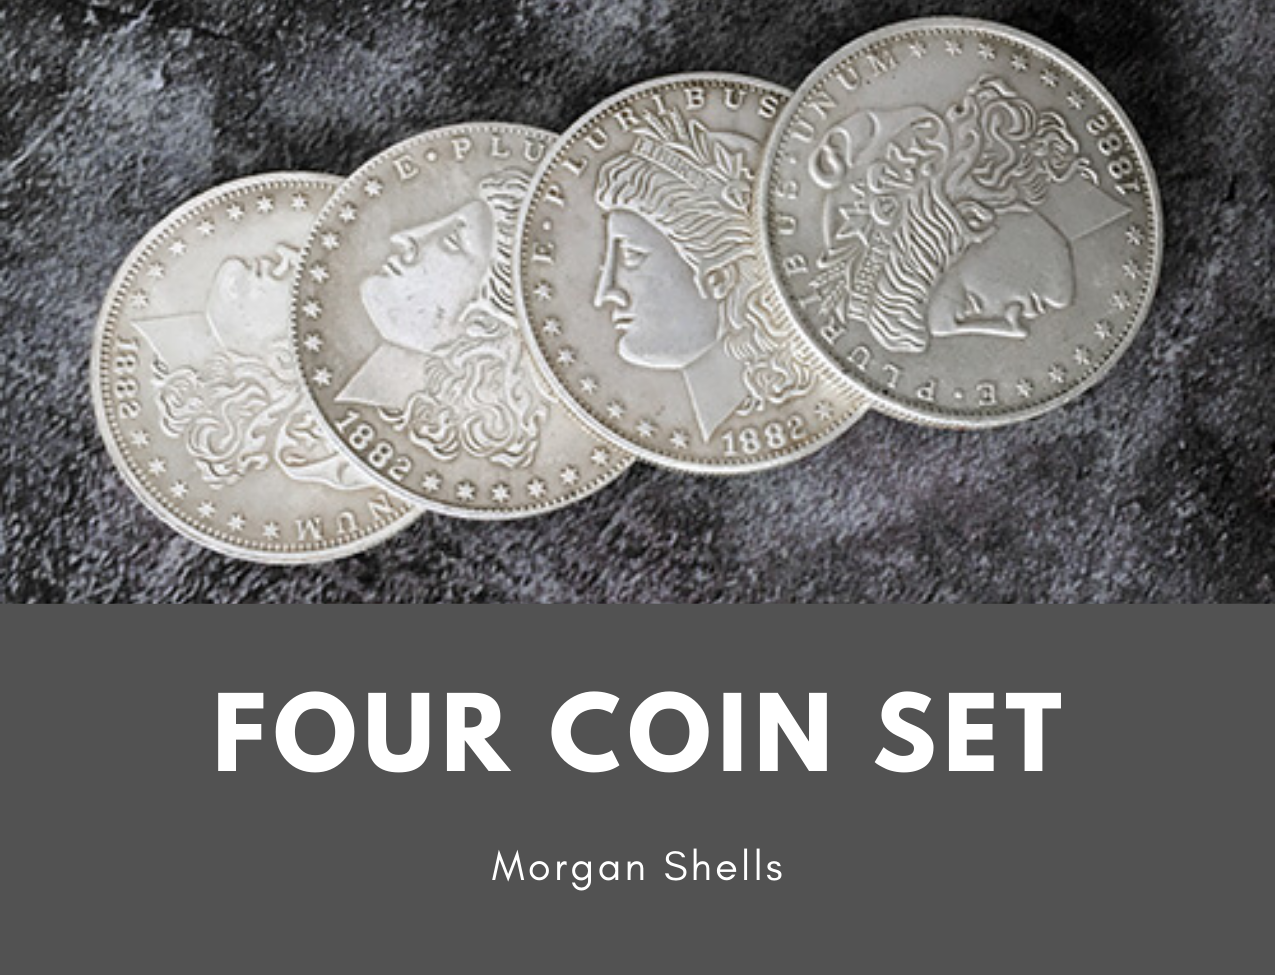 Shelled Four Coin Set Morgan Counterfeit Replicas